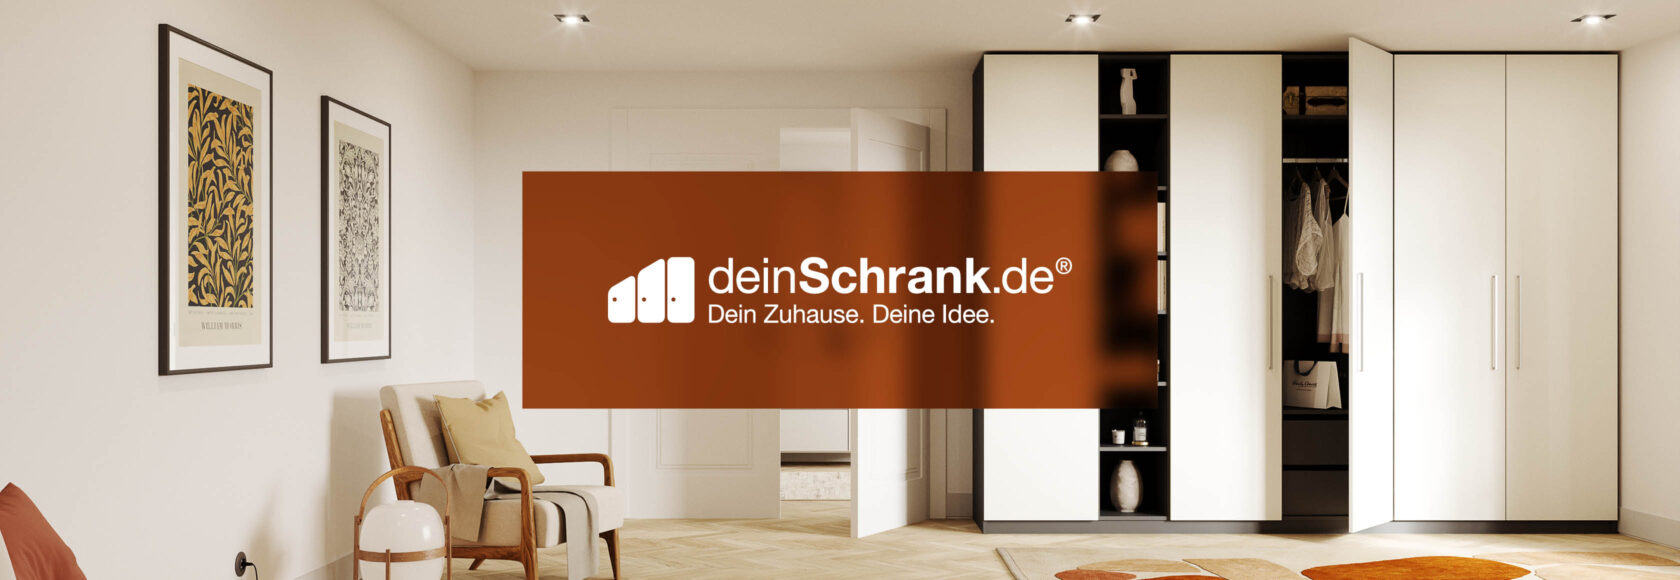 Bild von einem weißen Schrank und dem deinSchrank.de Logo